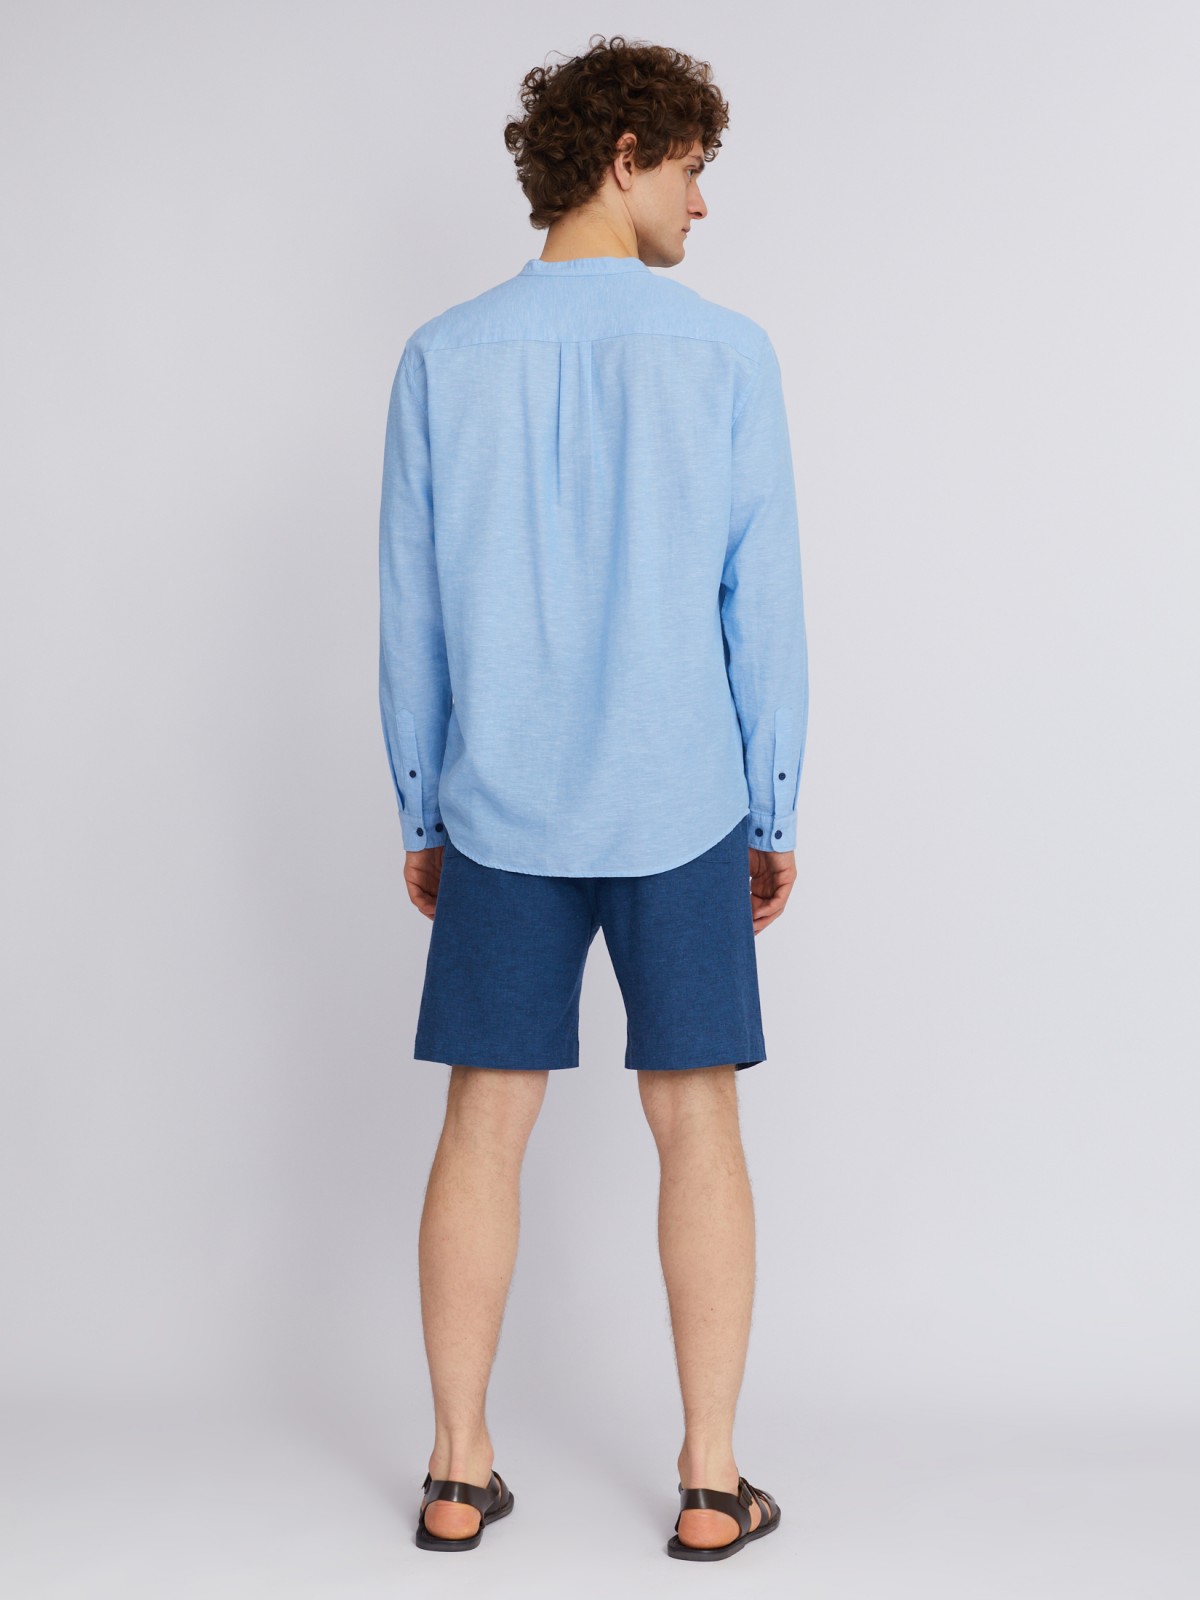 Рубашка из льна с длинным рукавом zolla 013232159013, цвет светло-голубой, размер S - фото 6